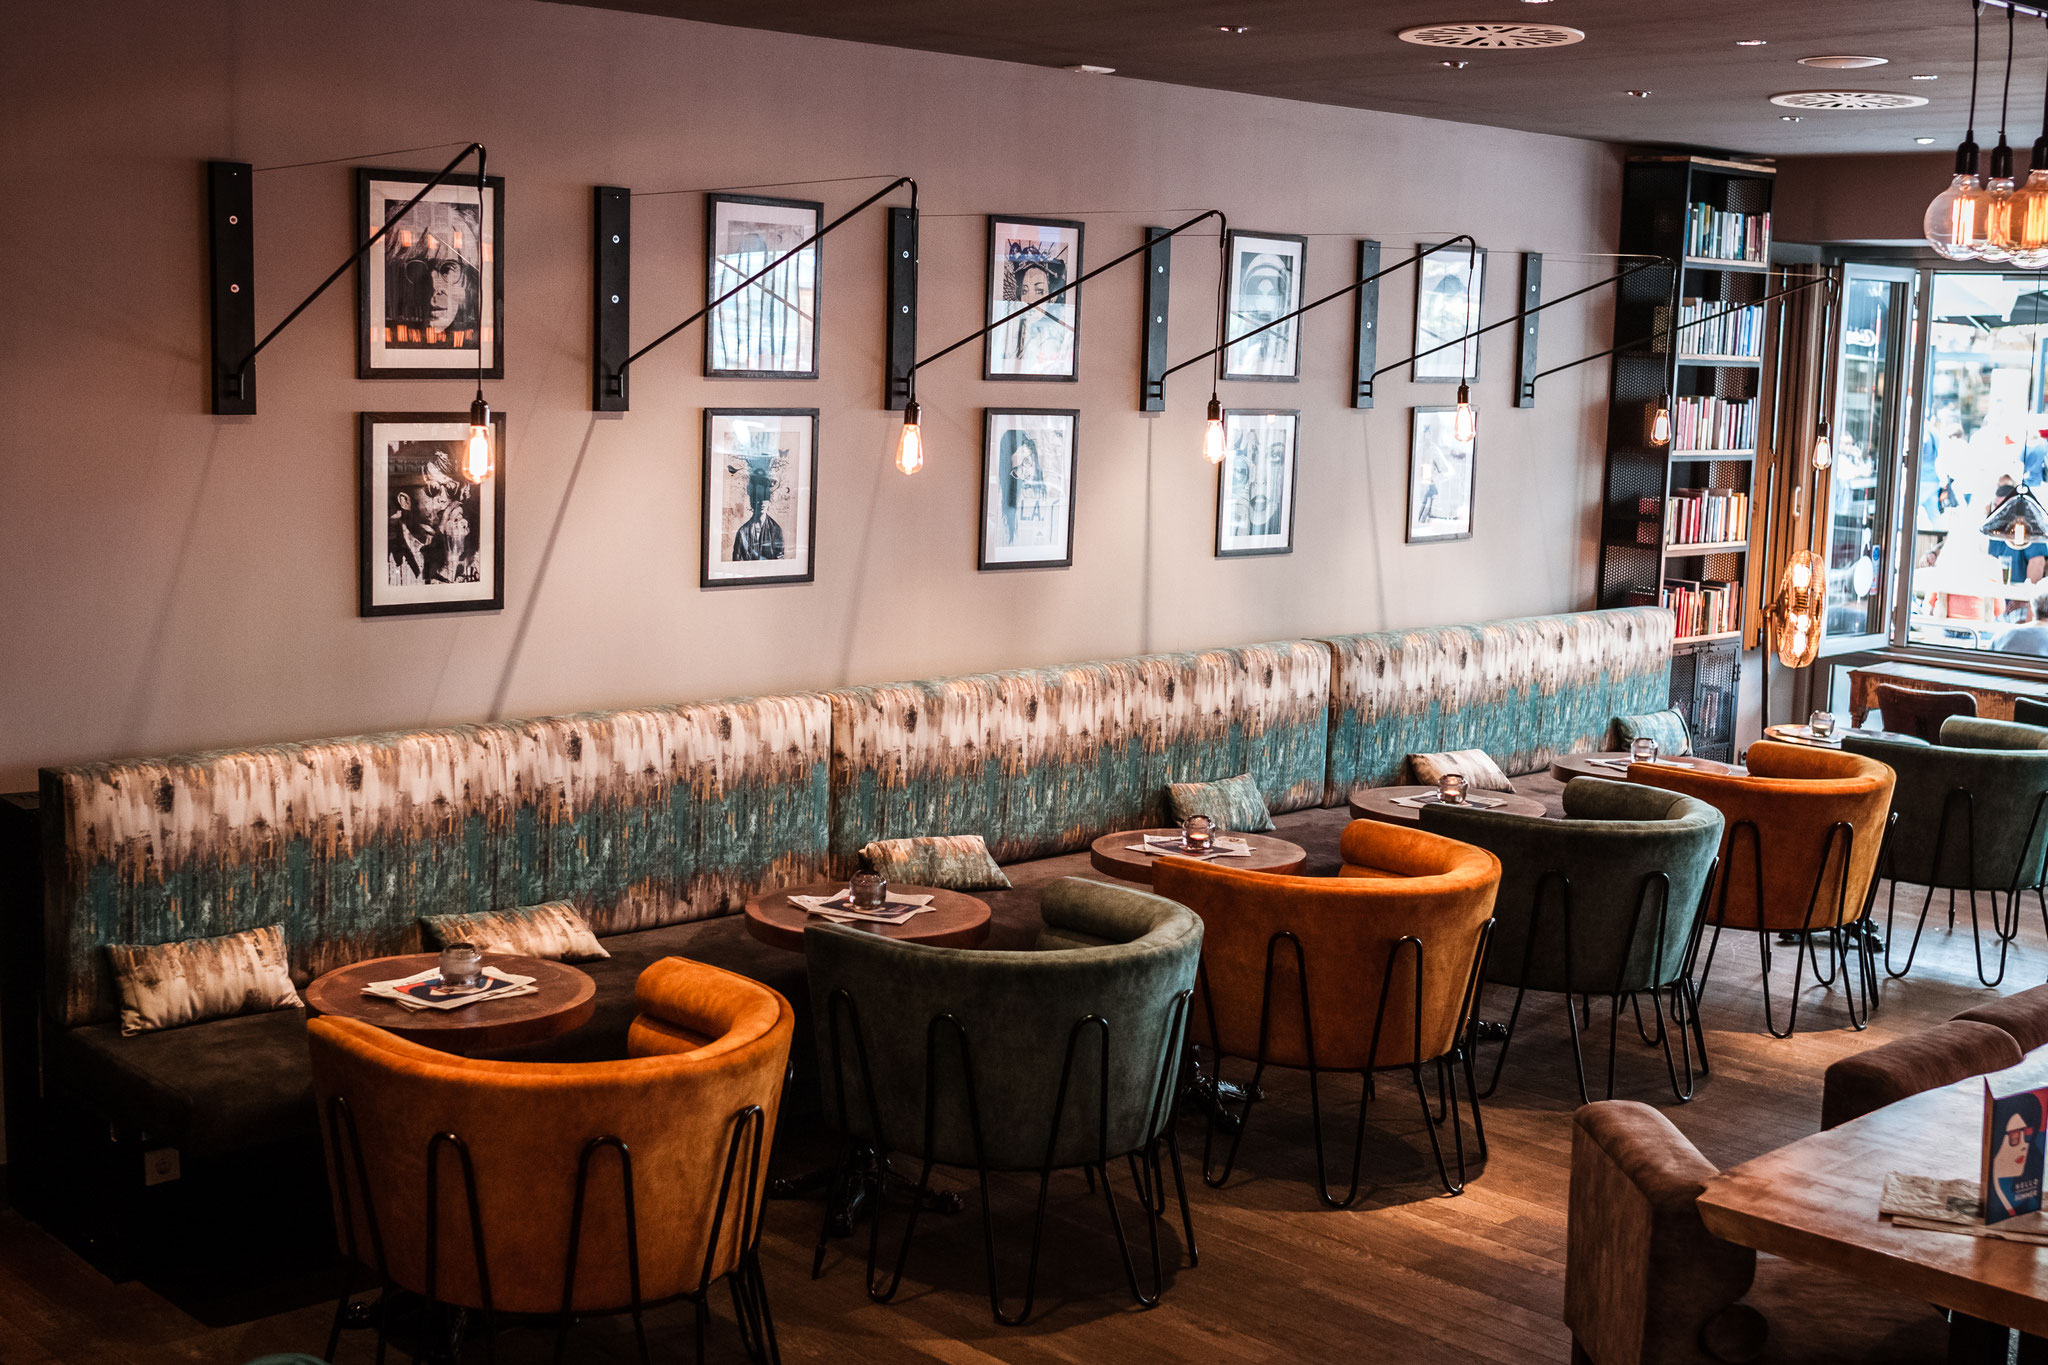 Cafe Leonardo© - Cafe, Bistro, Bar, Eventlocation